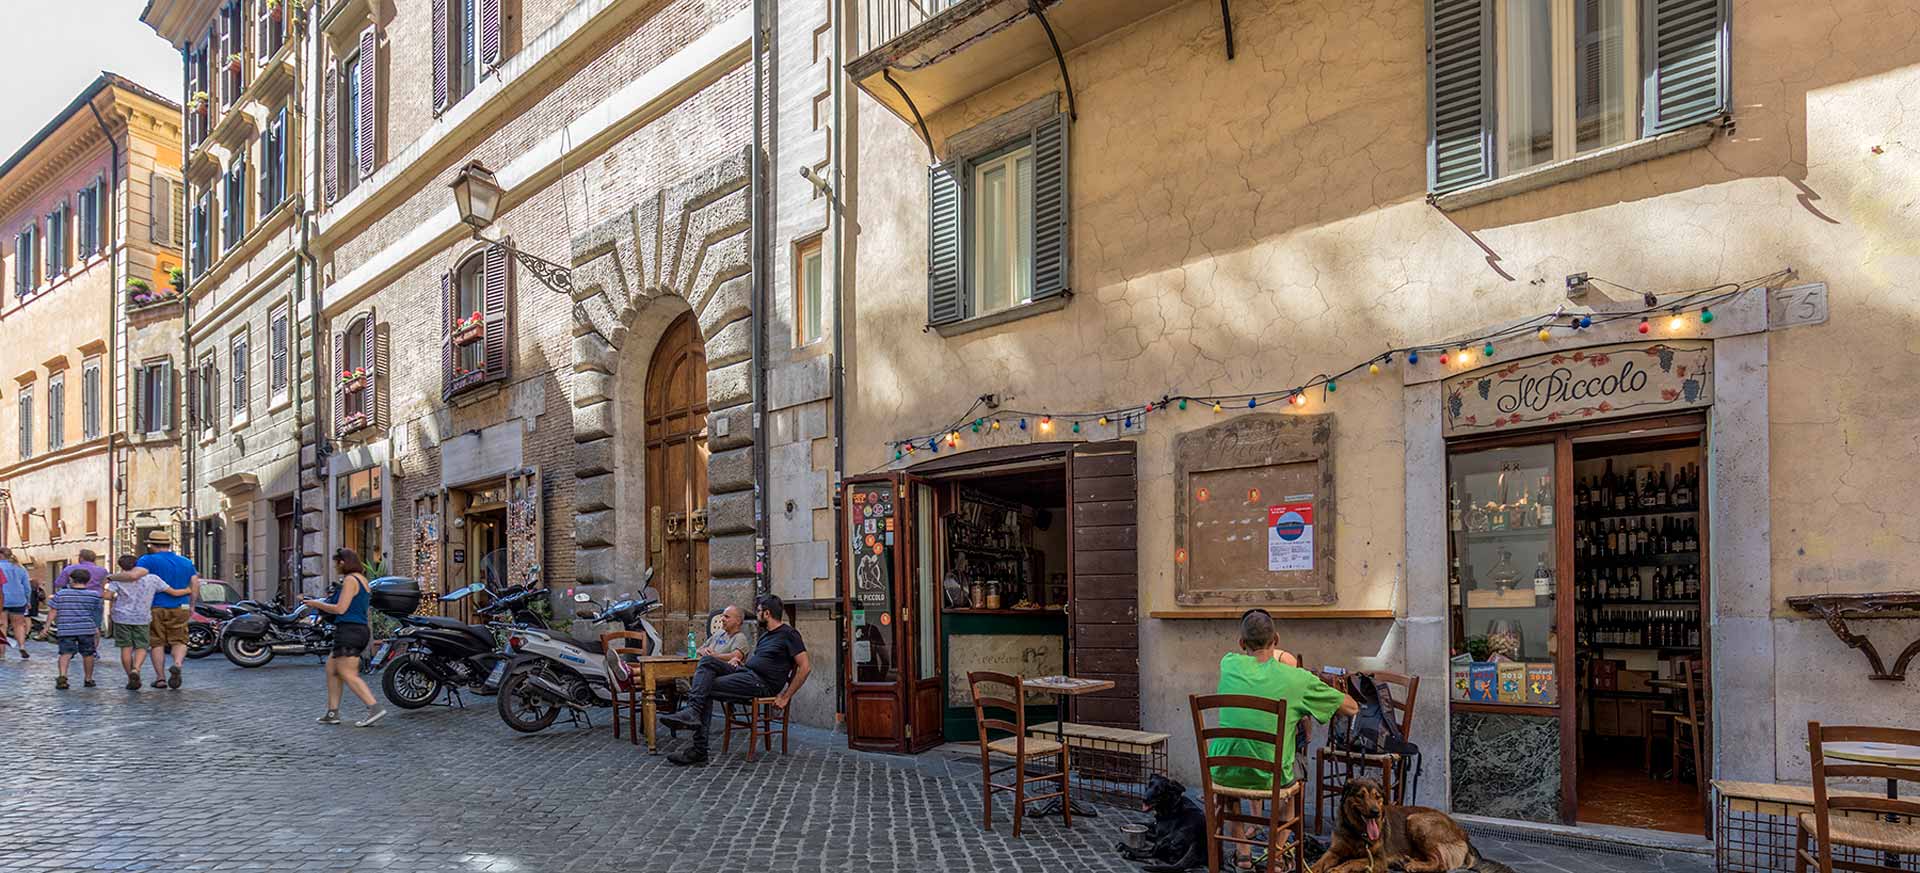 Location de charme Piazza Navona - Rome - 